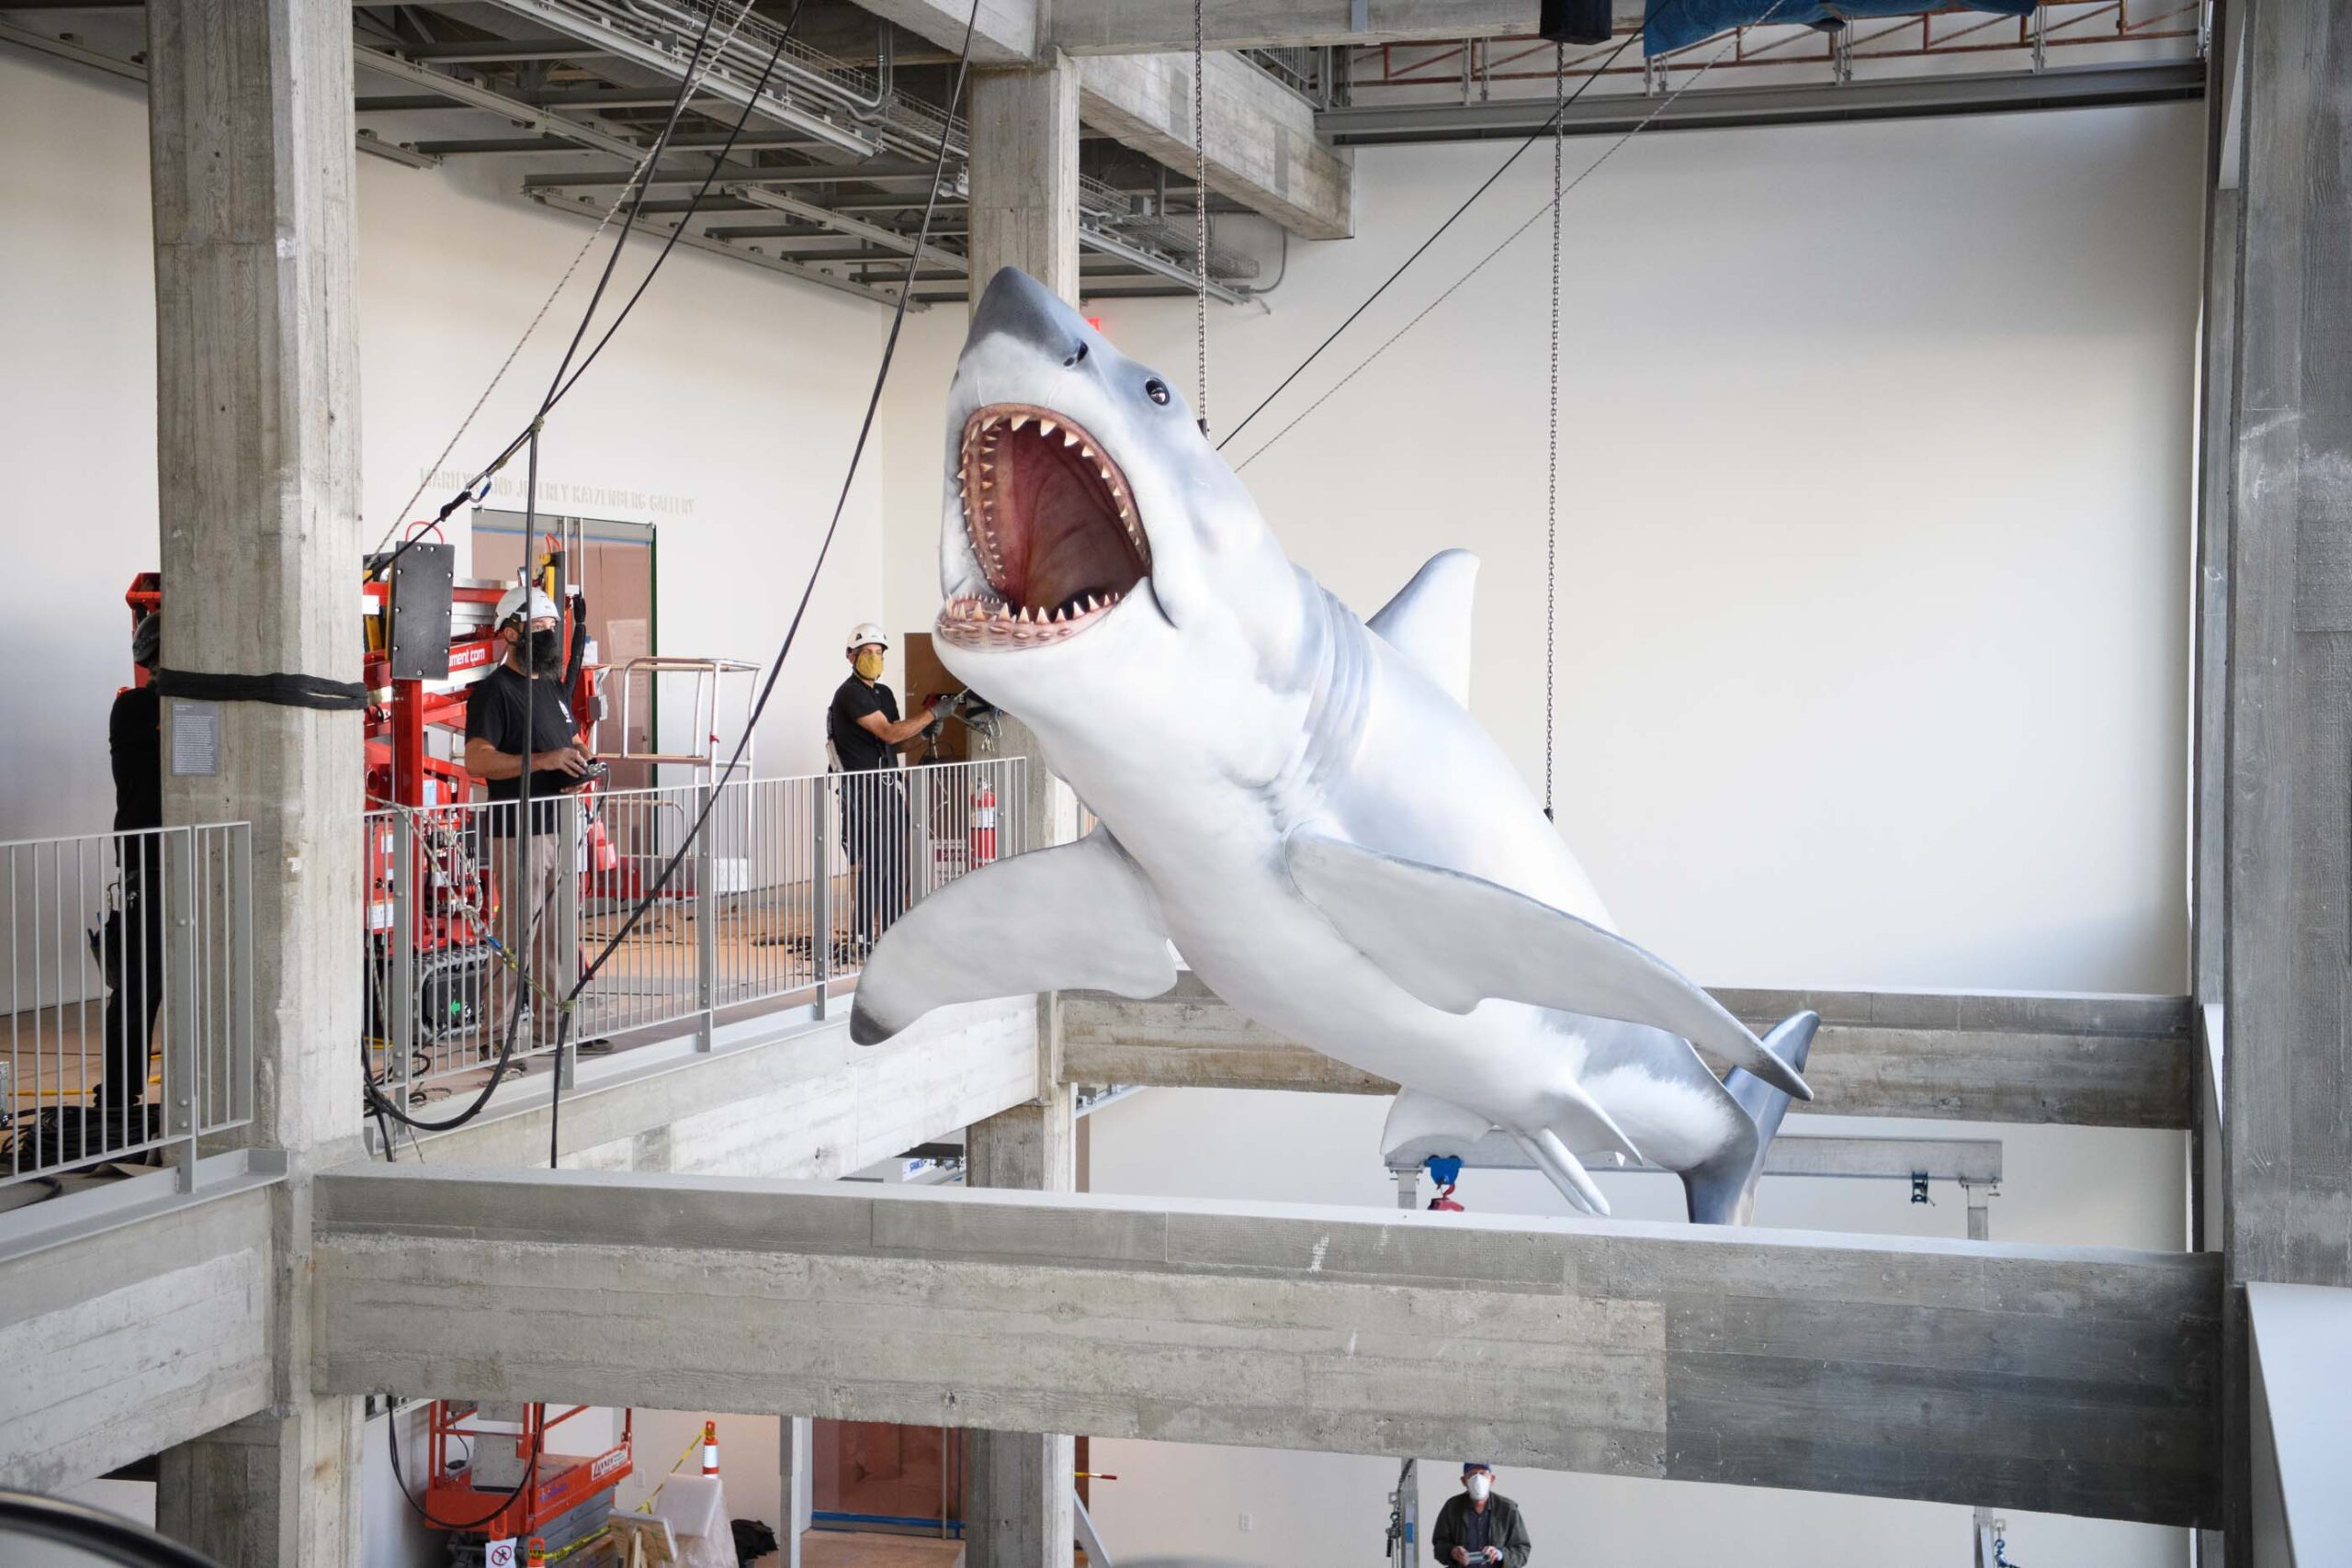 9683S. Spielberg’in Jaws Adlı Yapımında Kullanılan Köpekbalığı Modeli, Gerçekleştirilen Onarımın Ardından Akademi Müzesi’ne Yerleştirildi